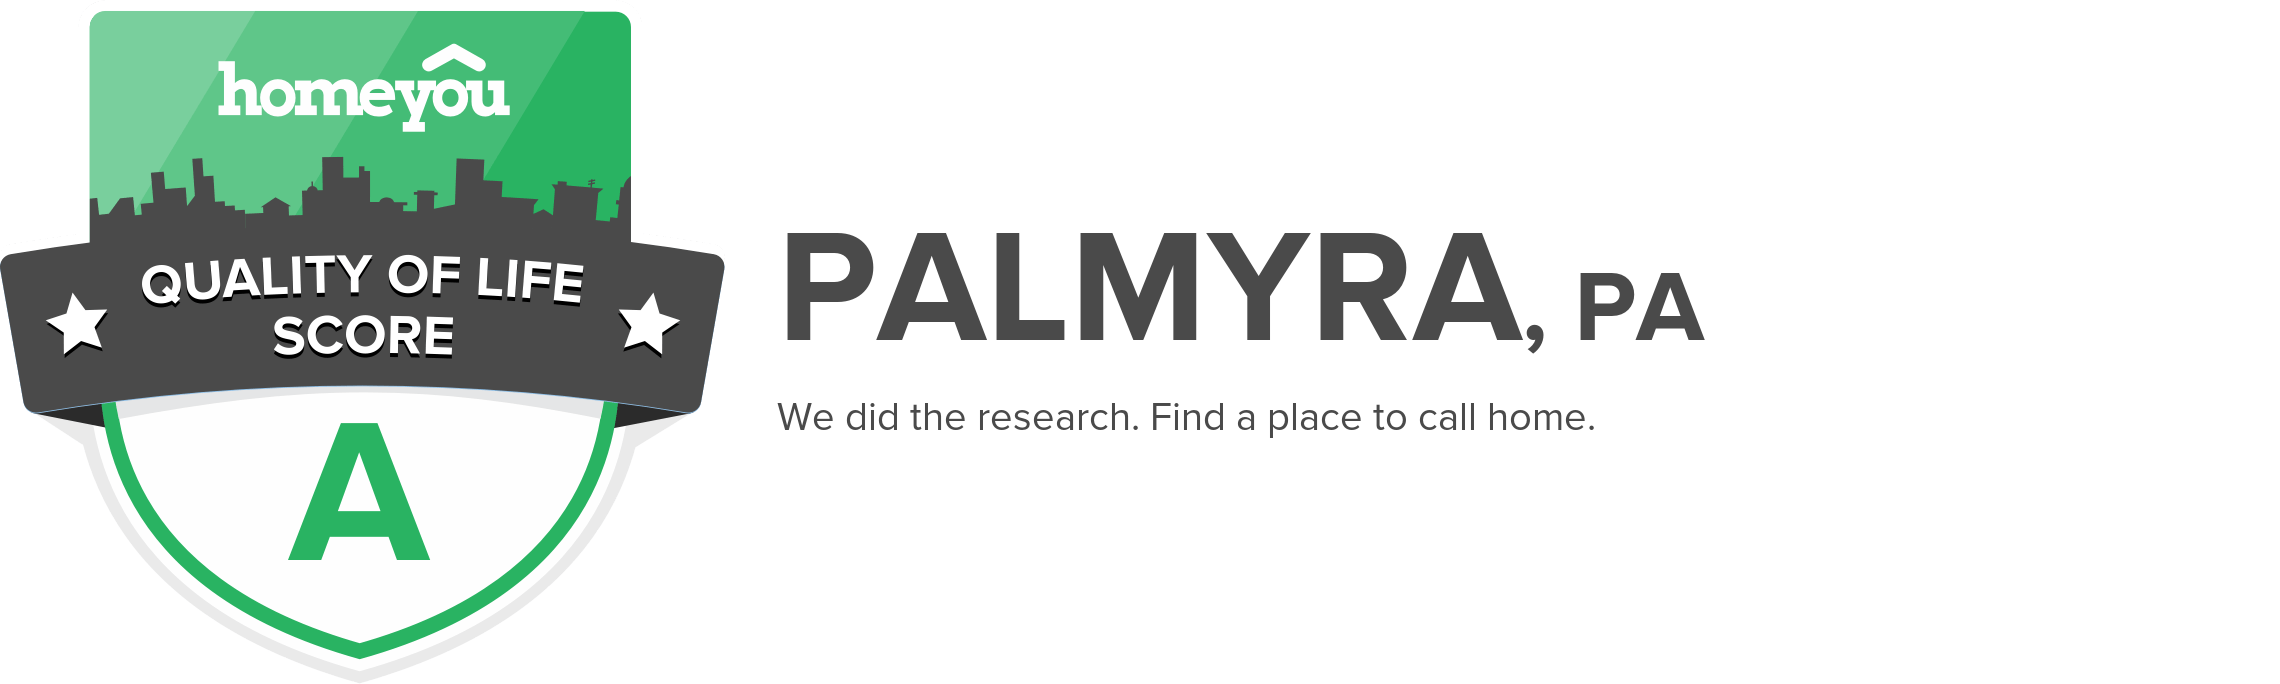 Palmyra, PA